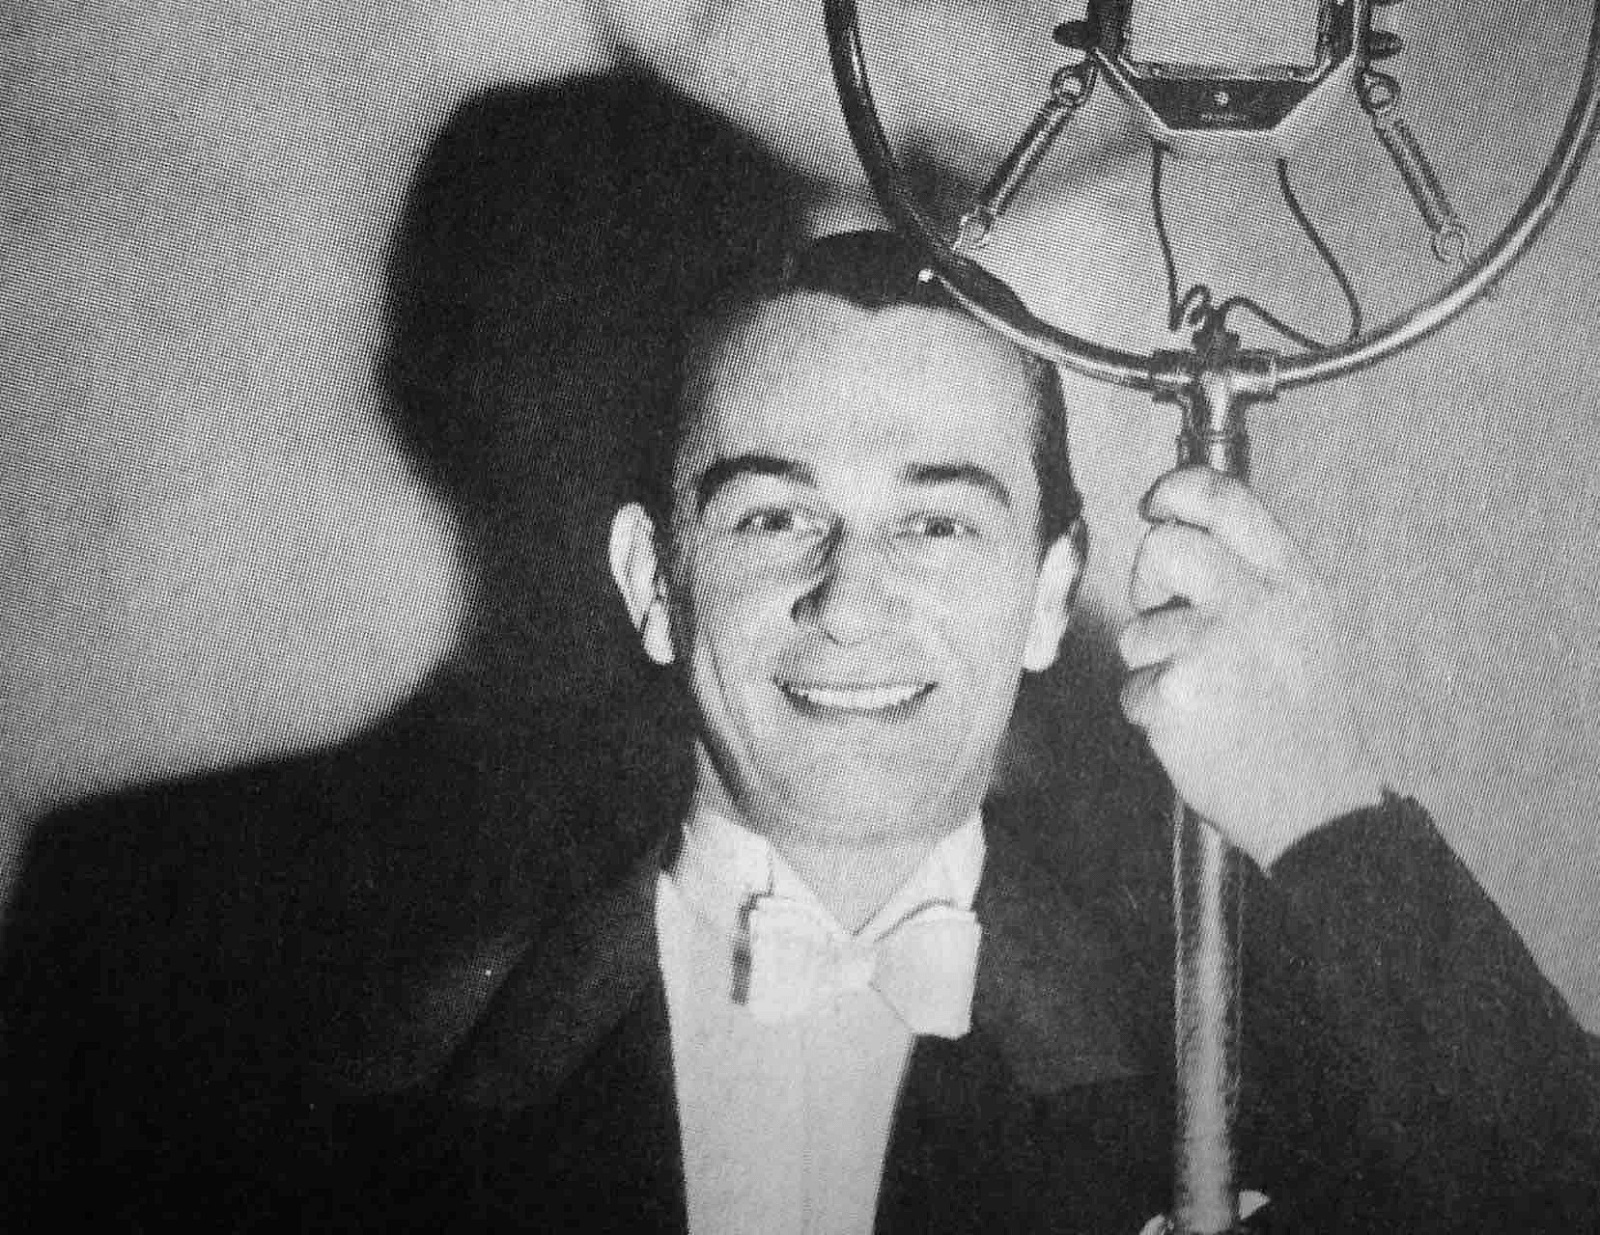 Czarno-białe zdjęcie przedstawiauśmiechniętego mężczyznę (Mieczysław Fogg), ubrany we frak i białą koszulę z muszką, opiera się o starodawny mikrofon radiowy